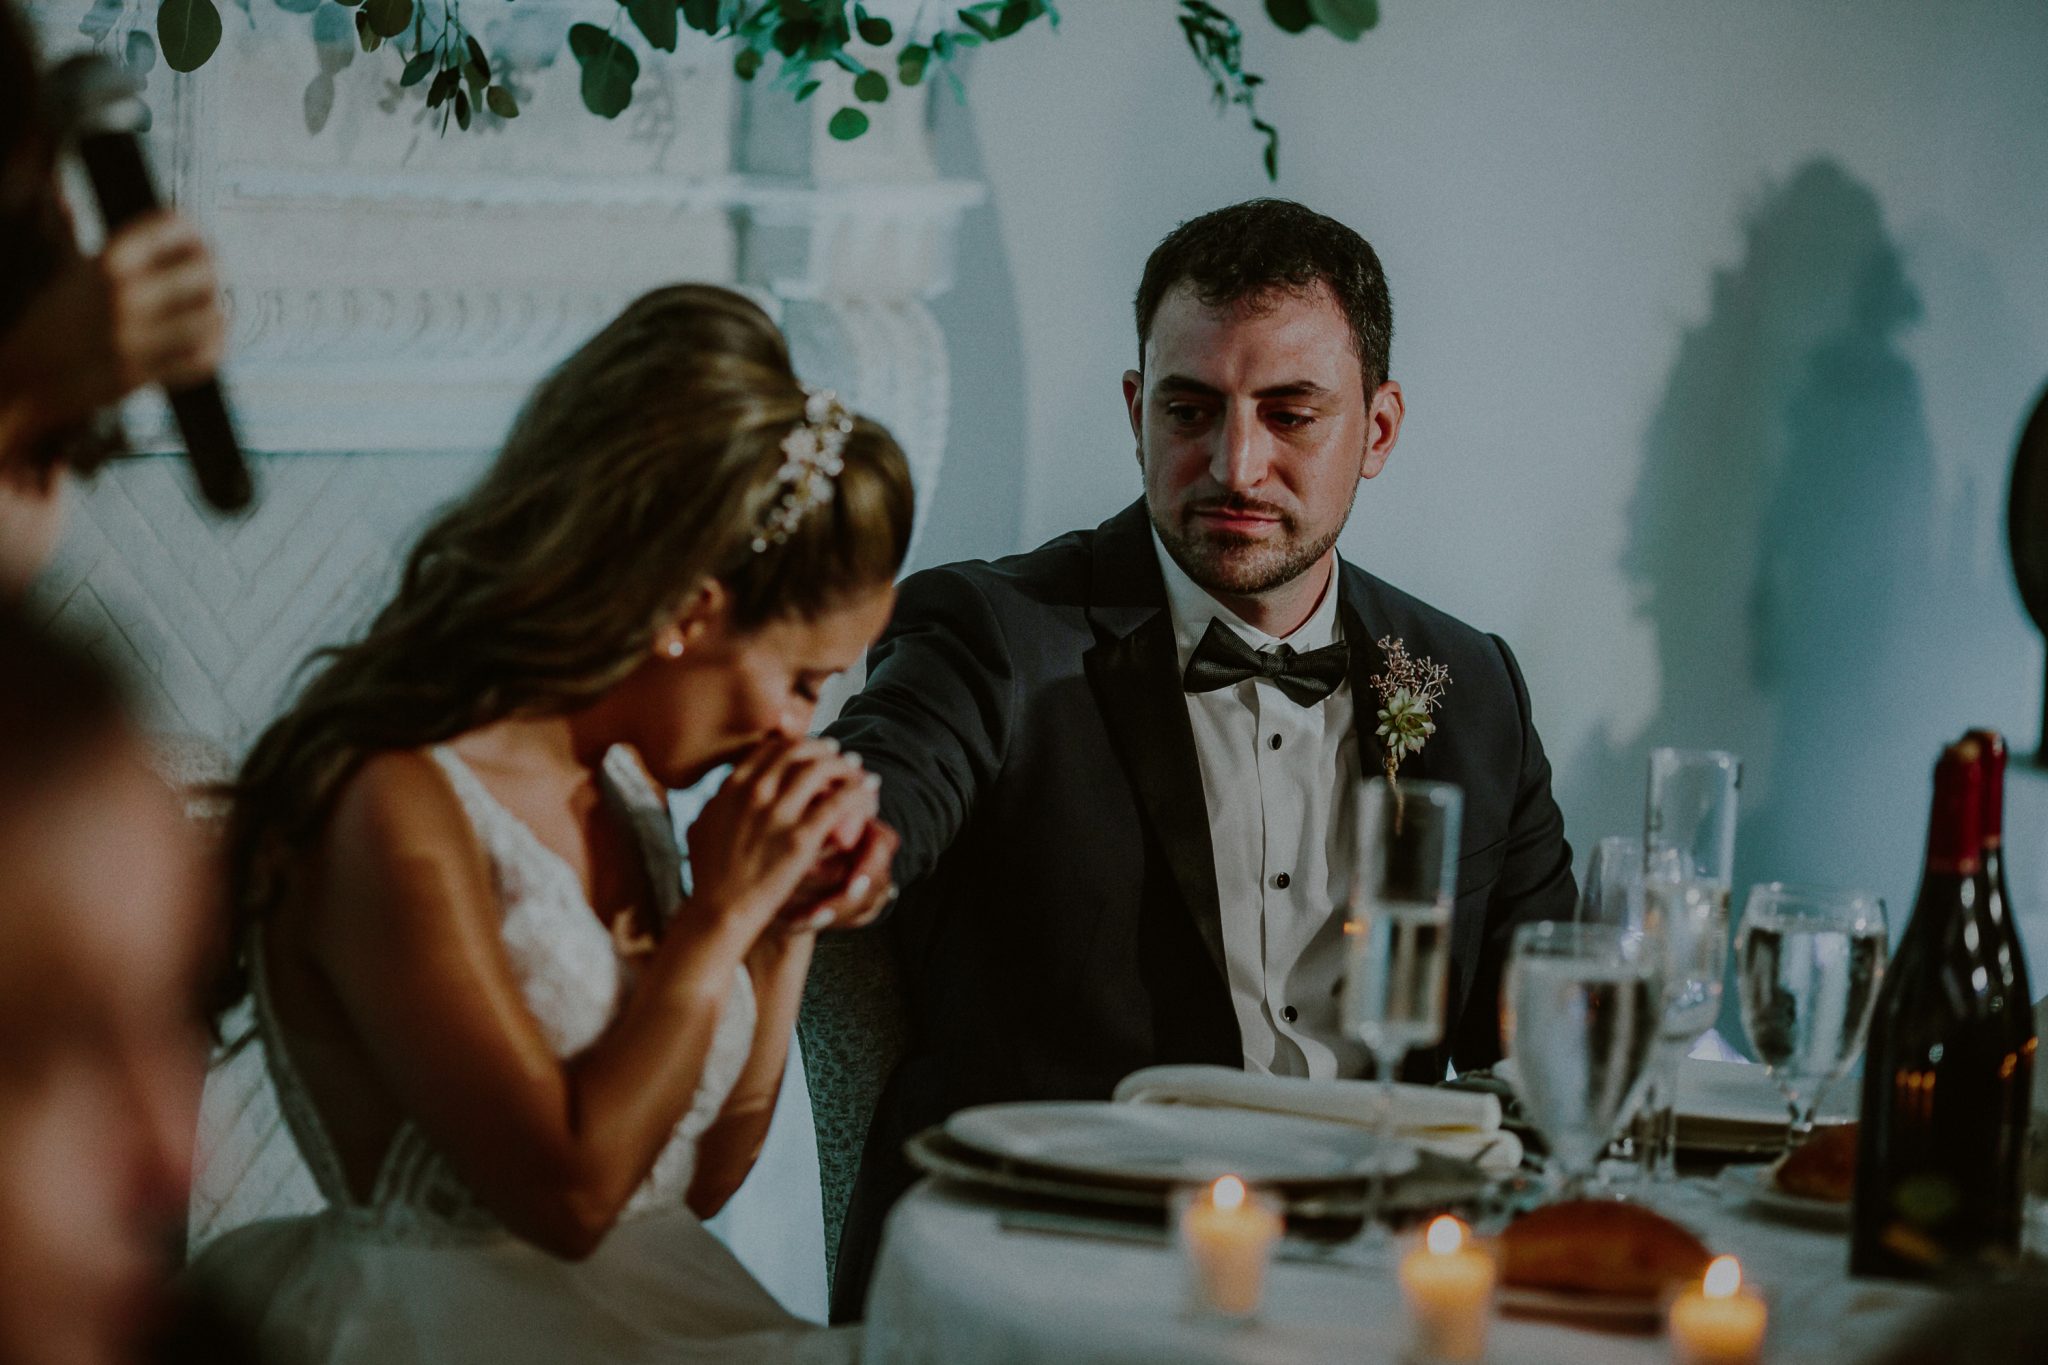 emotional wedding photography